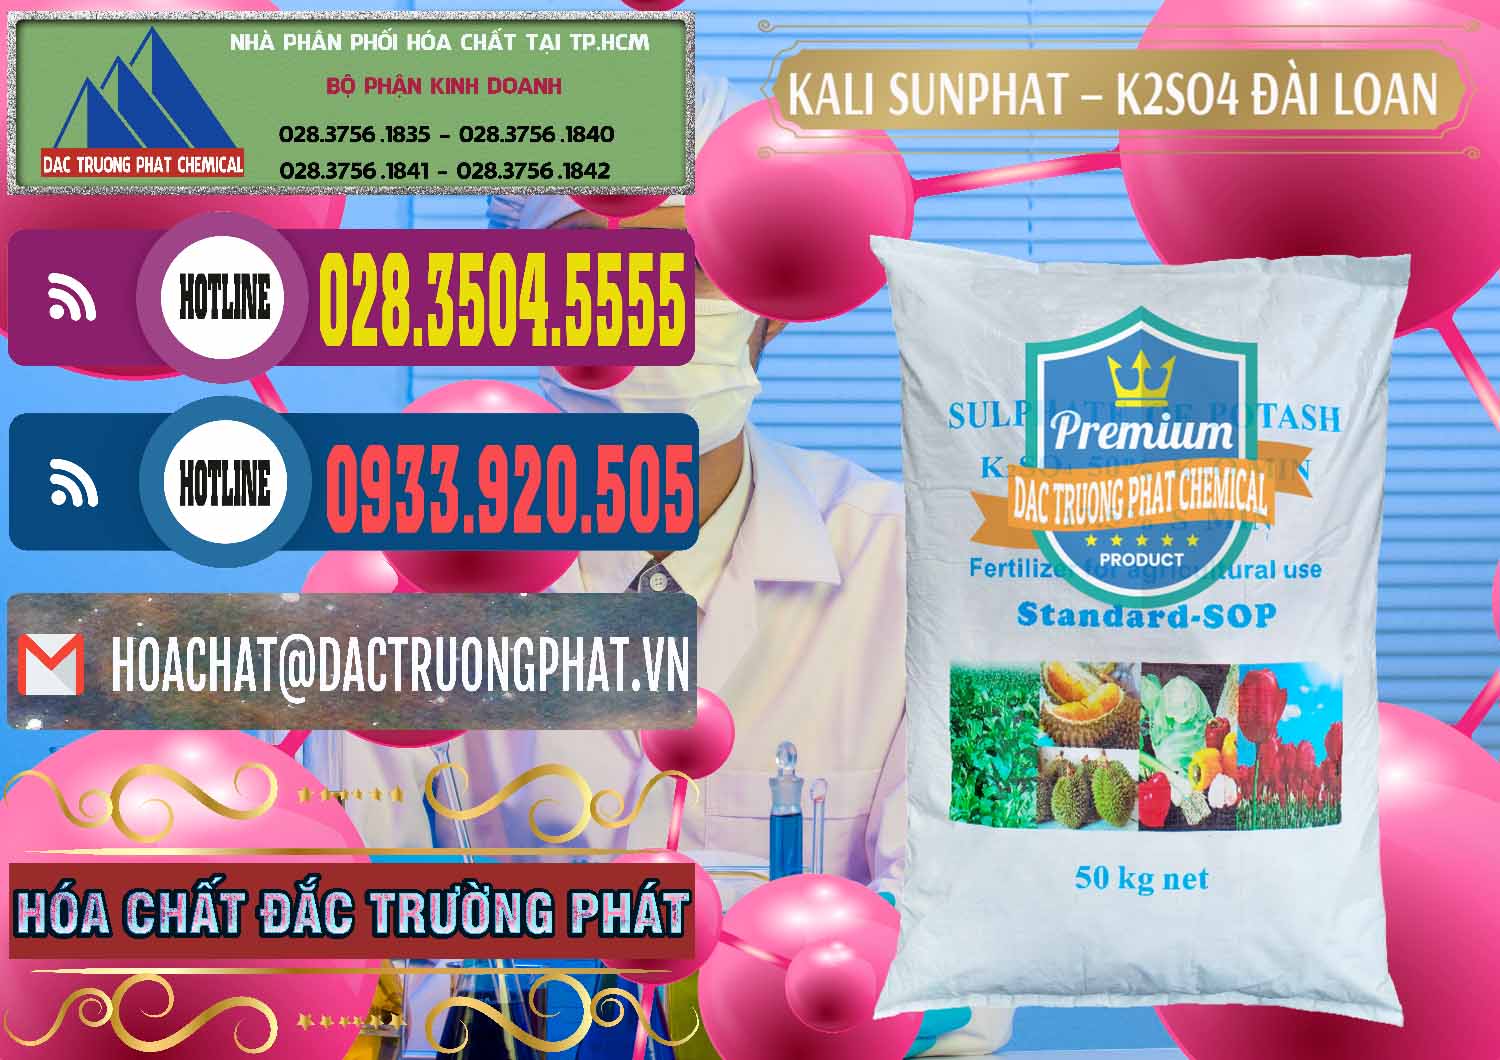 Chuyên bán & cung ứng Kali Sunphat – K2SO4 Đài Loan Taiwan - 0084 - Cty bán và phân phối hóa chất tại TP.HCM - muabanhoachat.com.vn